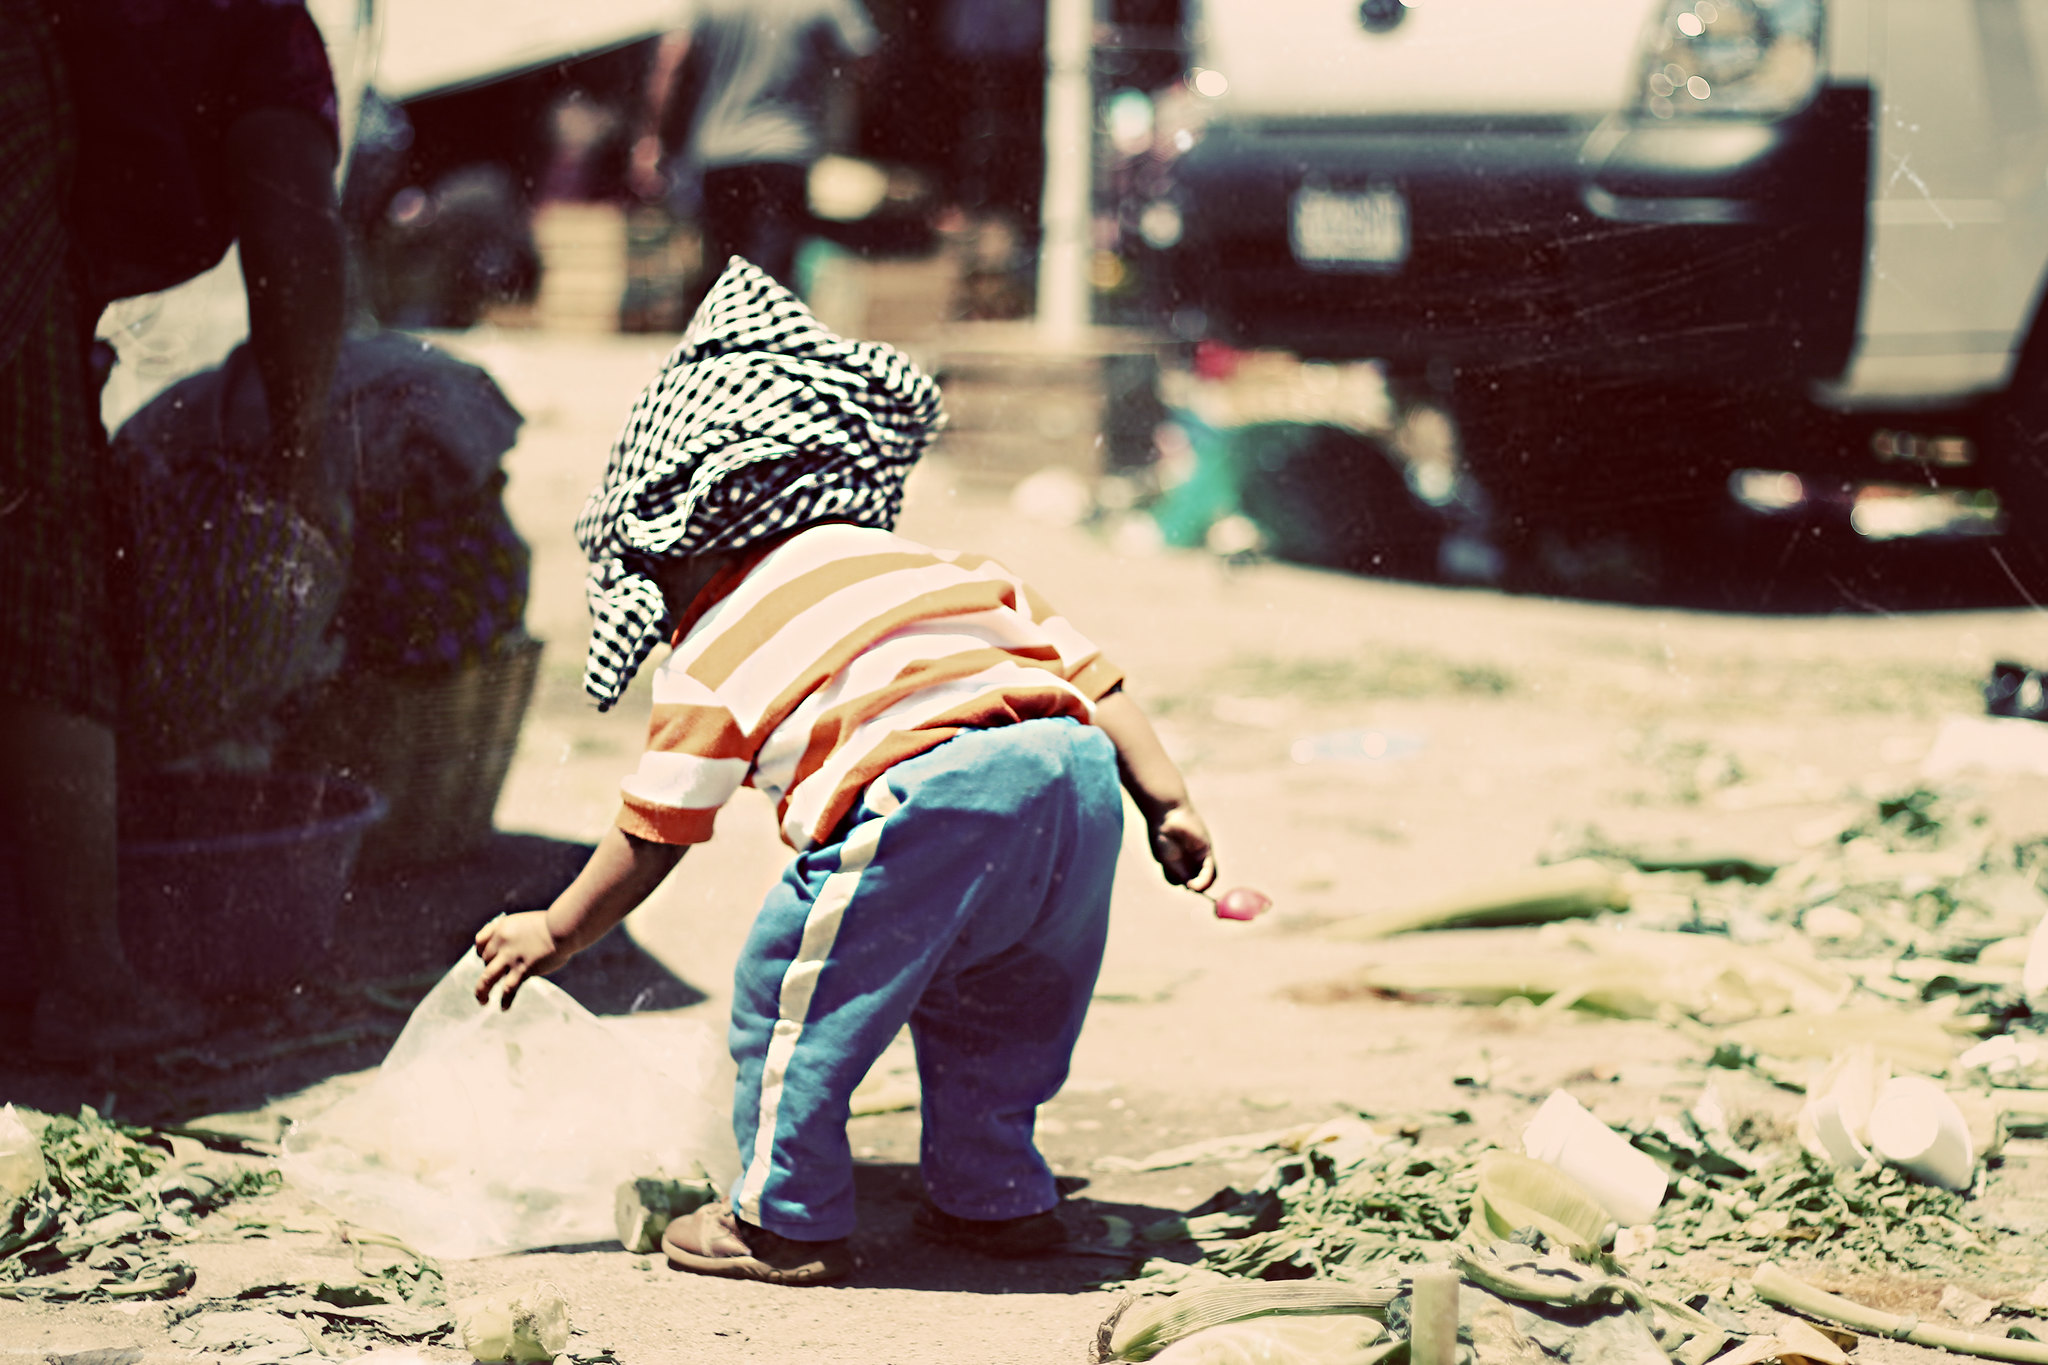 Un niño pequeño con tela envuelta alrededor de la cabeza juega con escombros en la calle.